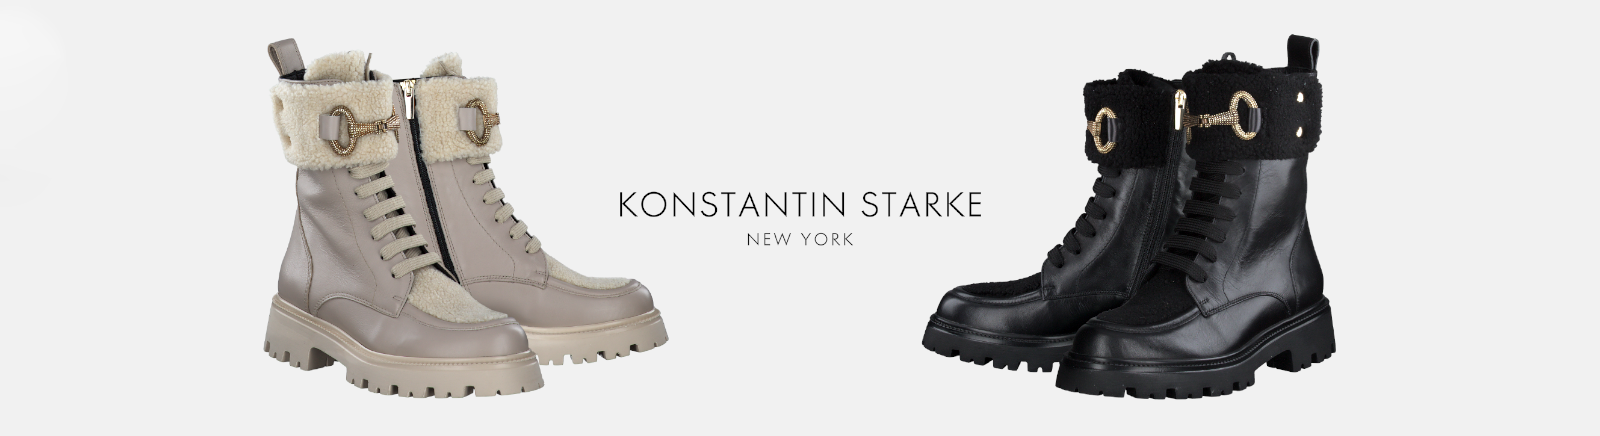 Konstantin Starke Plateau-Sandalen für Damen im Online-Shop von GISY kaufen